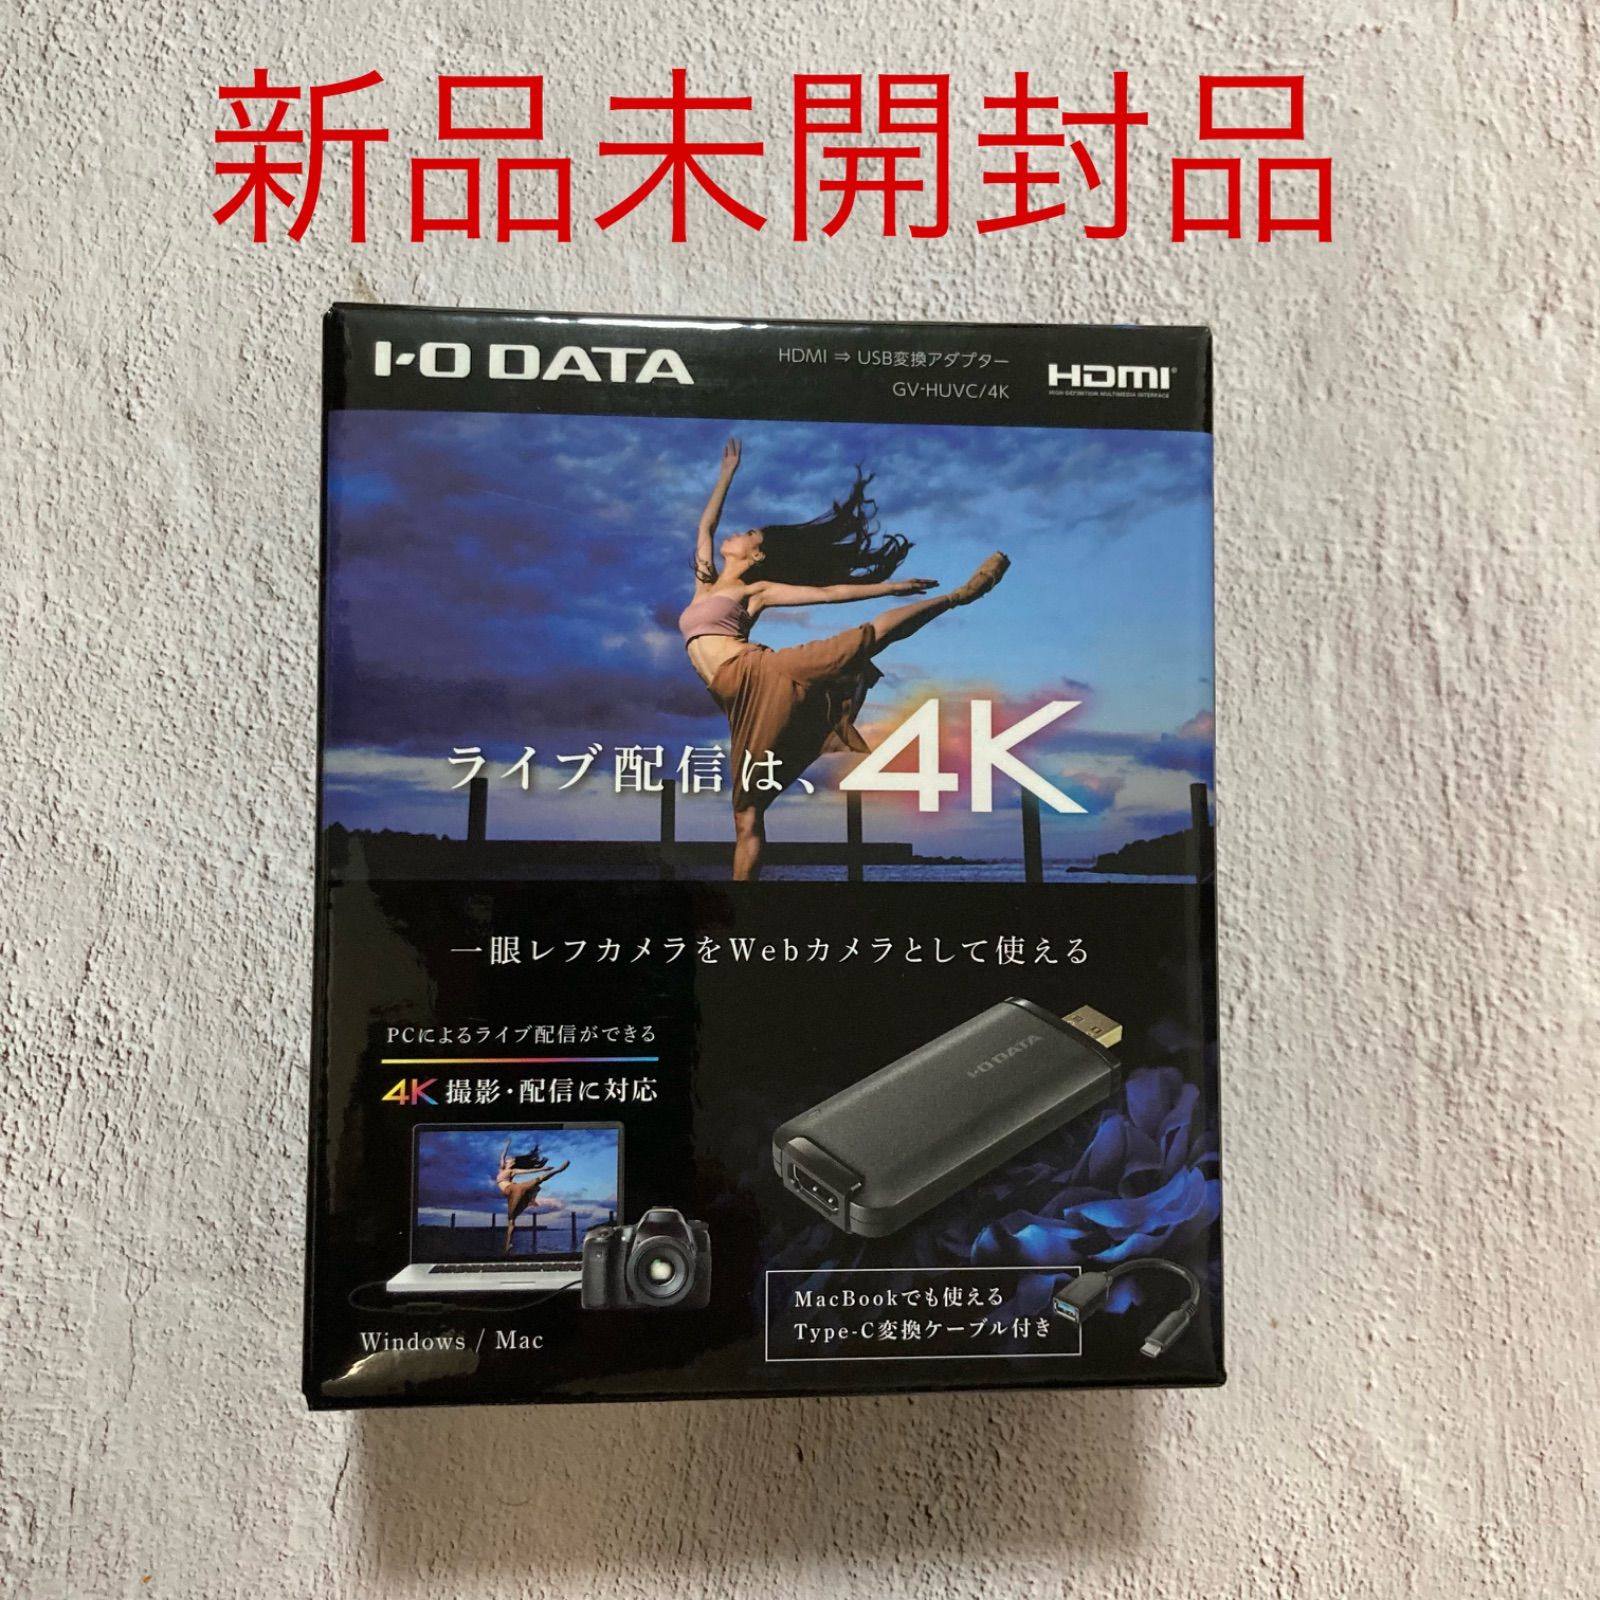 新品 GV-HUVC/4K IO DATA HDMI変換アダプター 4K対応 - elubeats ...